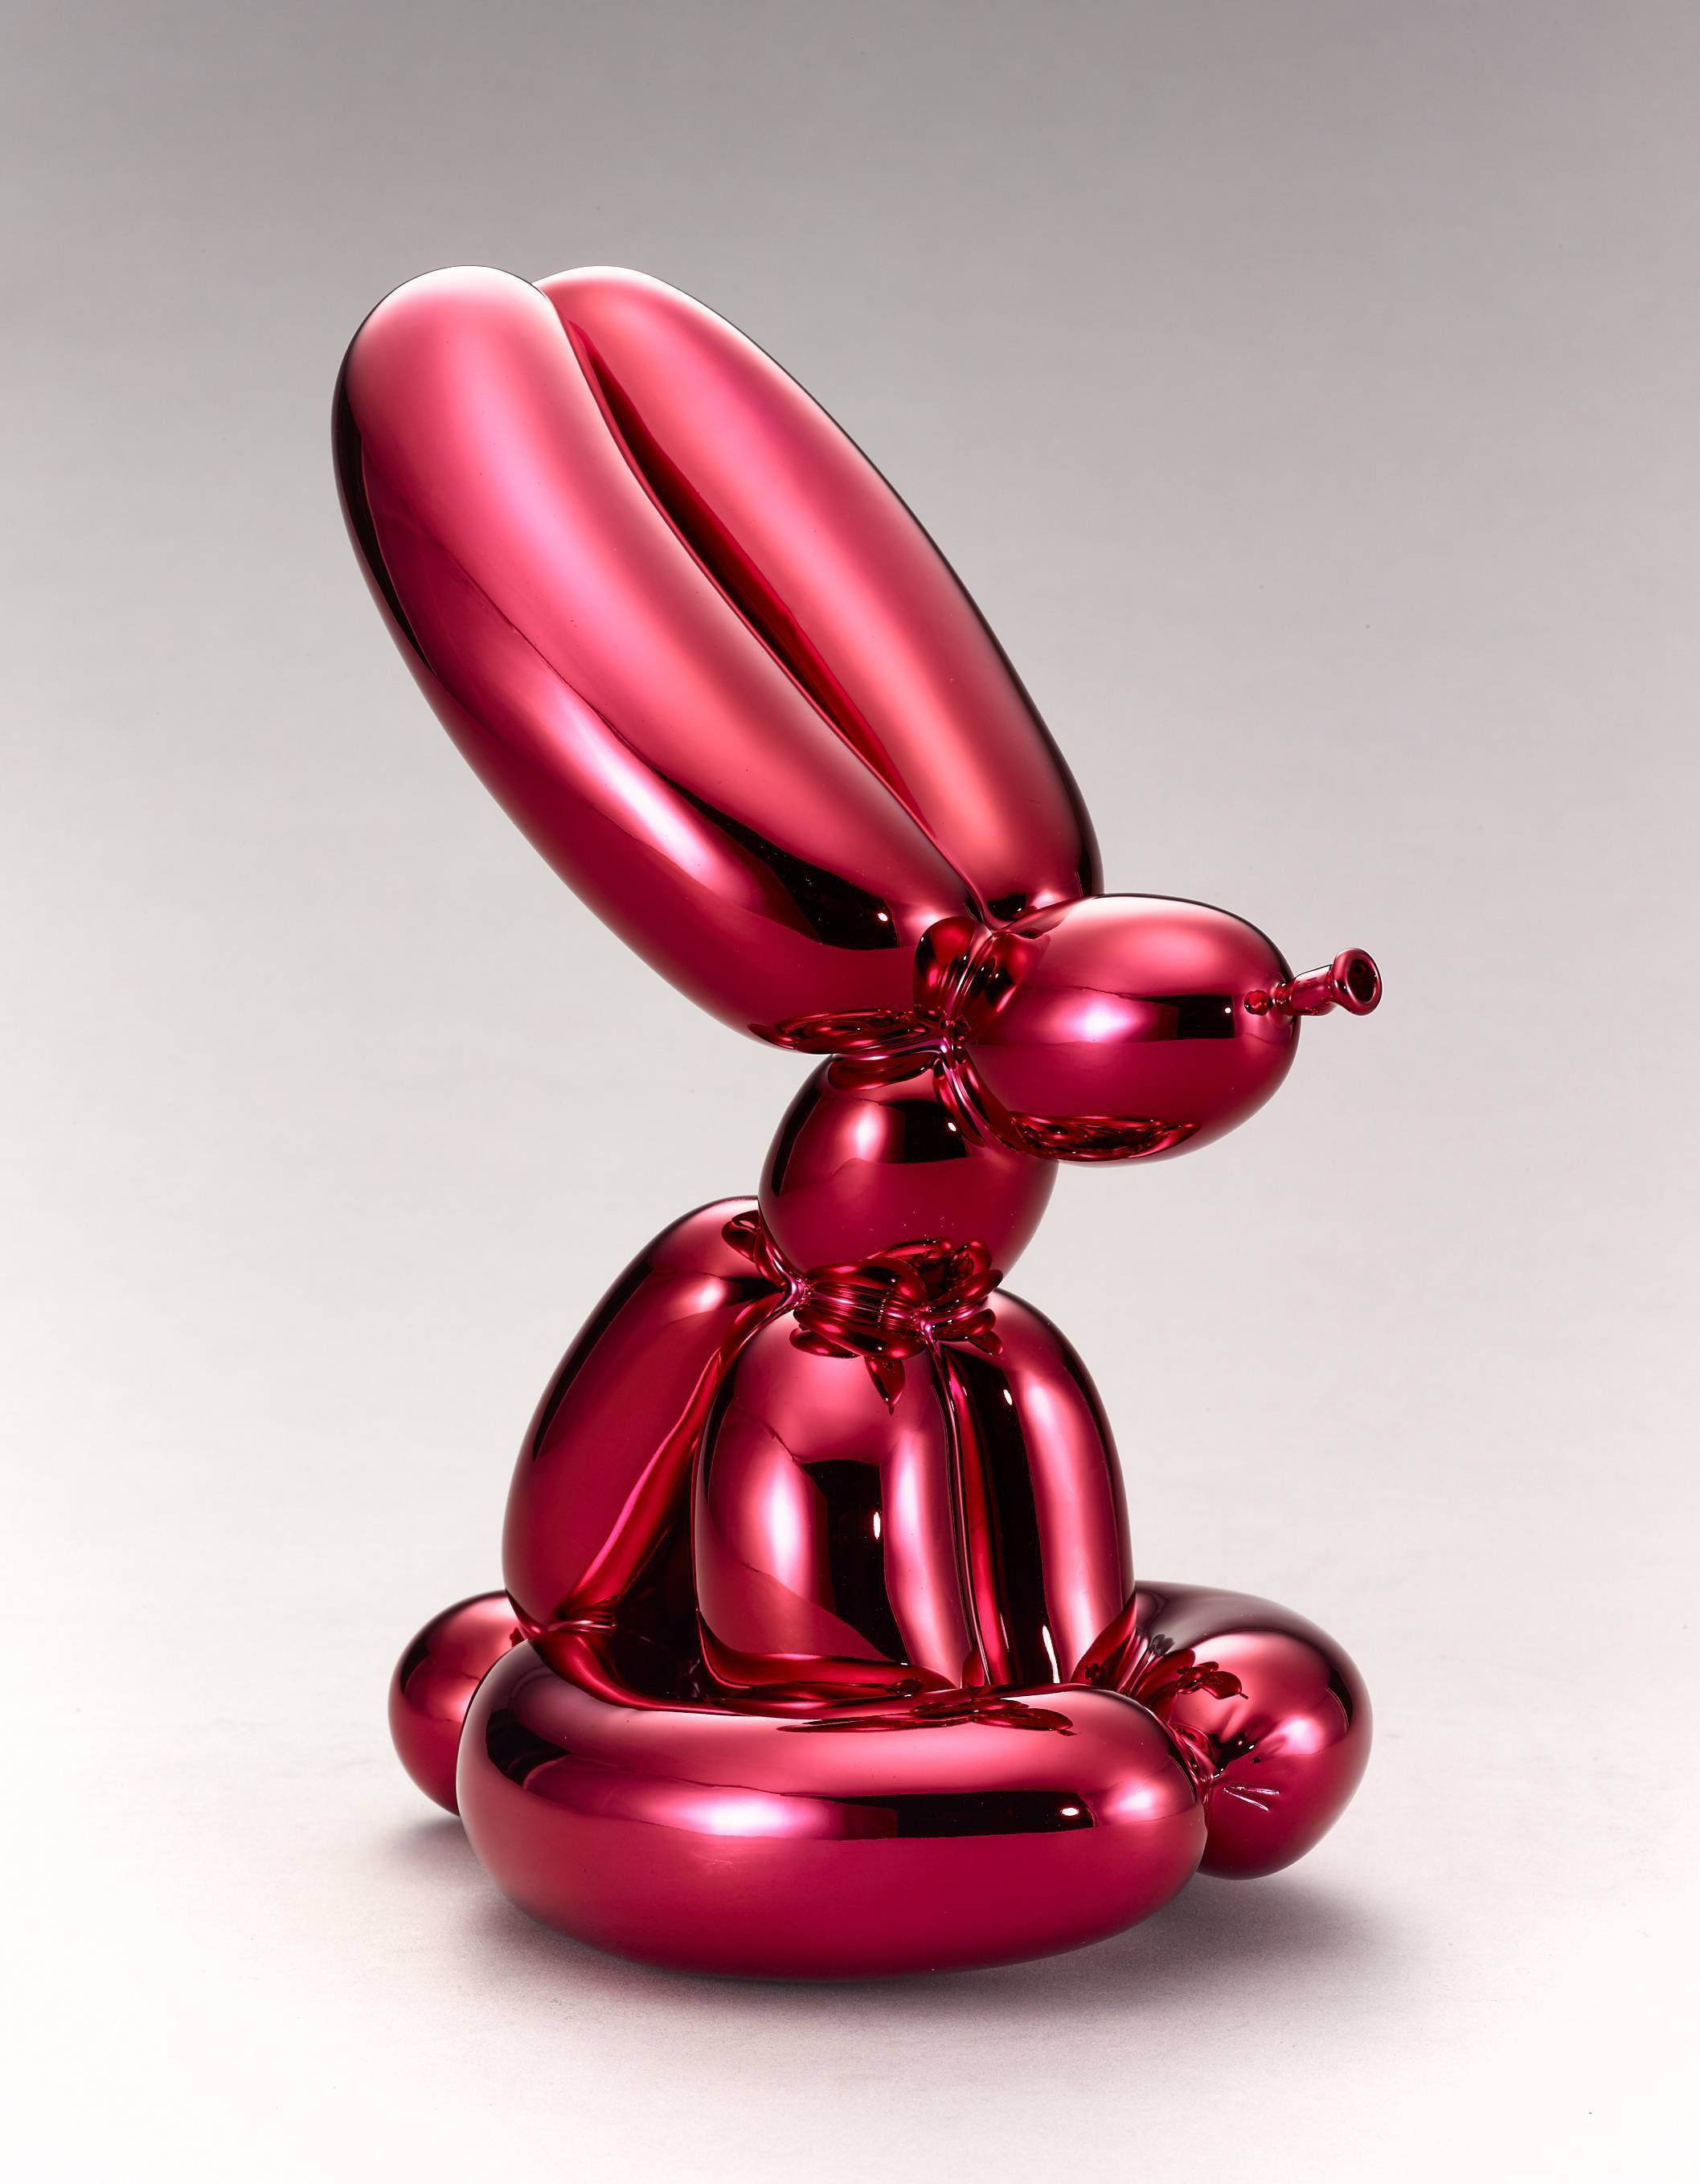 傑夫昆斯 氣球動物 系列  氣球兔(紅) 2017  精緻陶瓷 29.2 x 13.9 x 21 cm © Jeff Koons